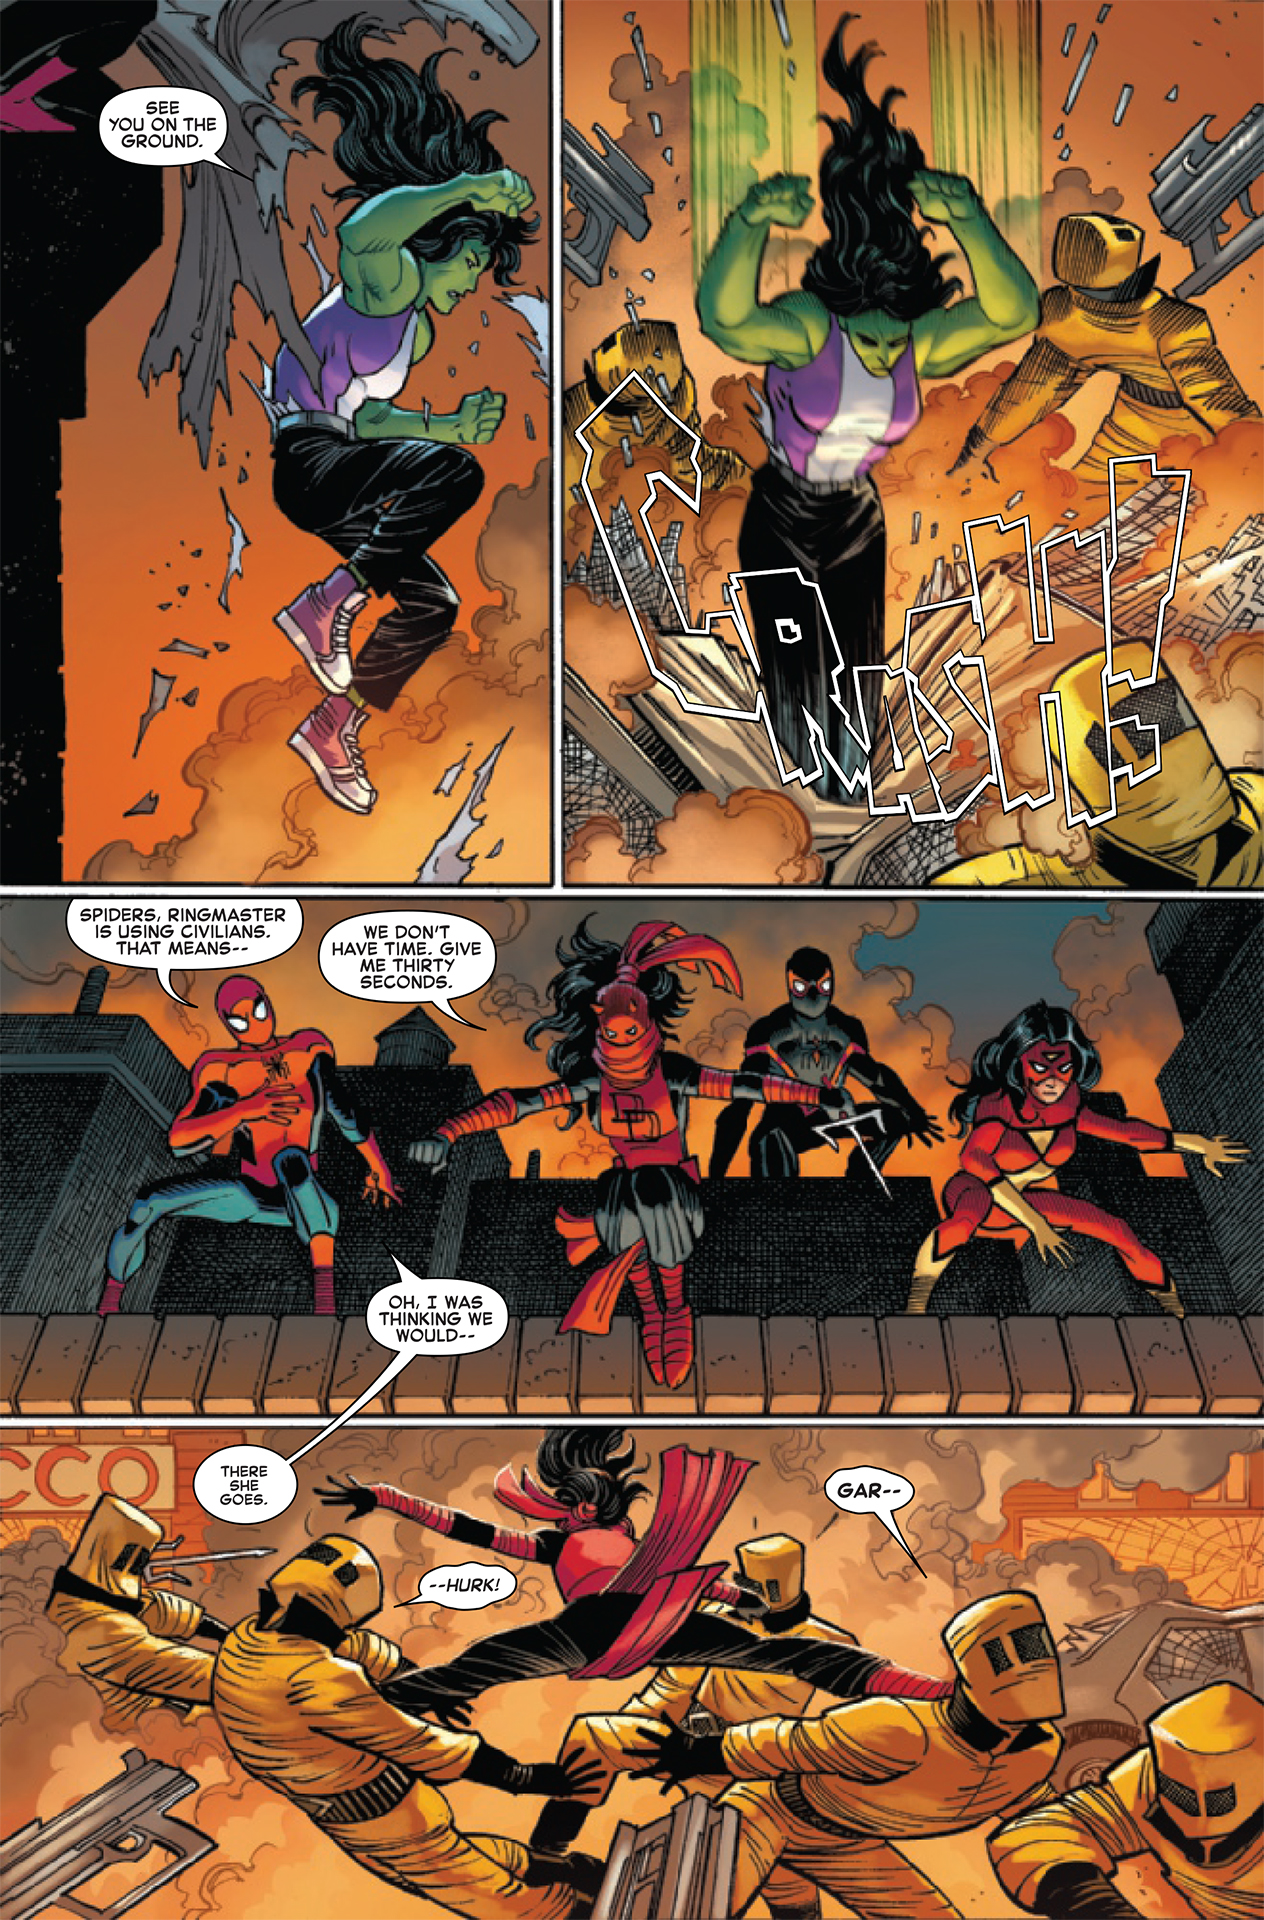 Познакомьтесь с суперкомандой Человека-паука, которая поможет ему положить конец войне банд.